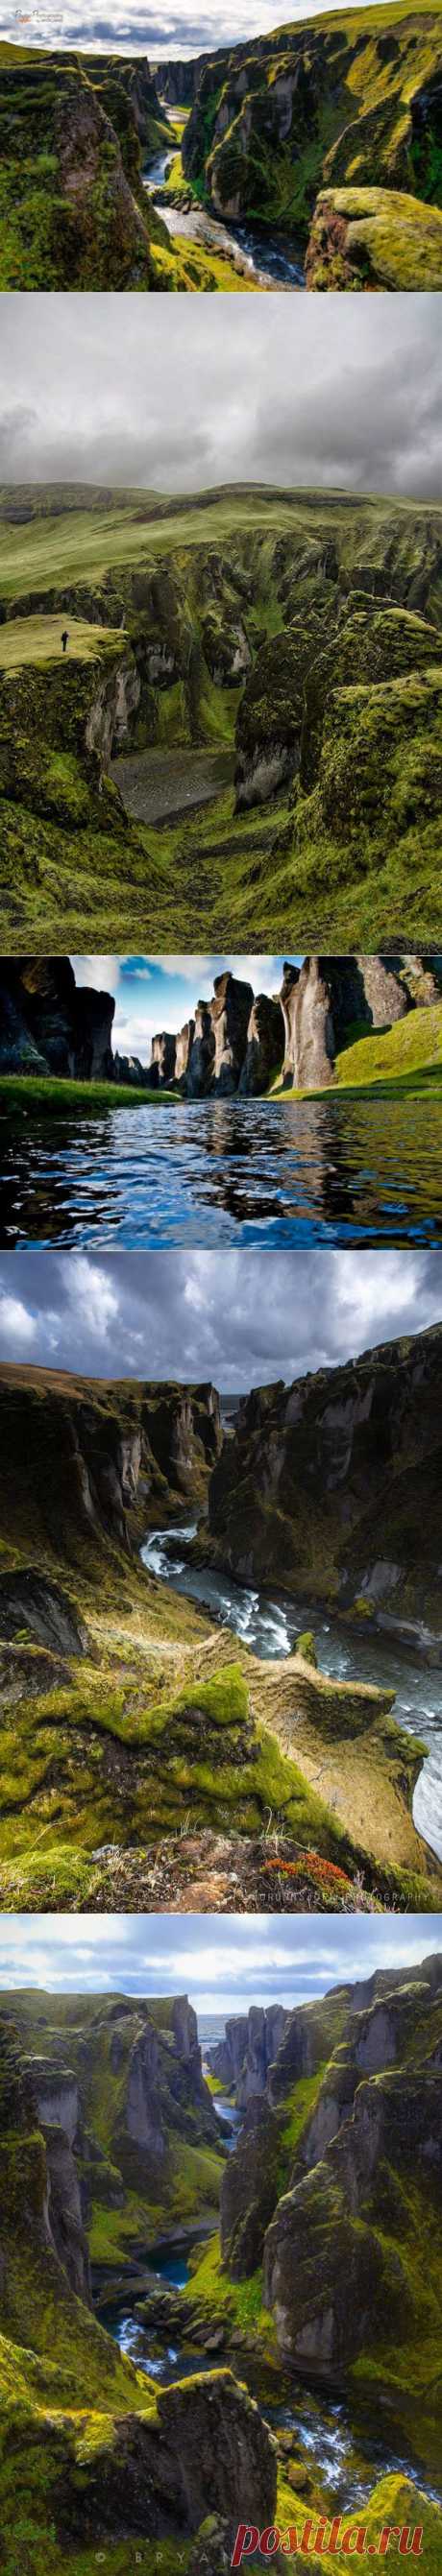 Самый красивый каньон Исландии / Туристический спутник